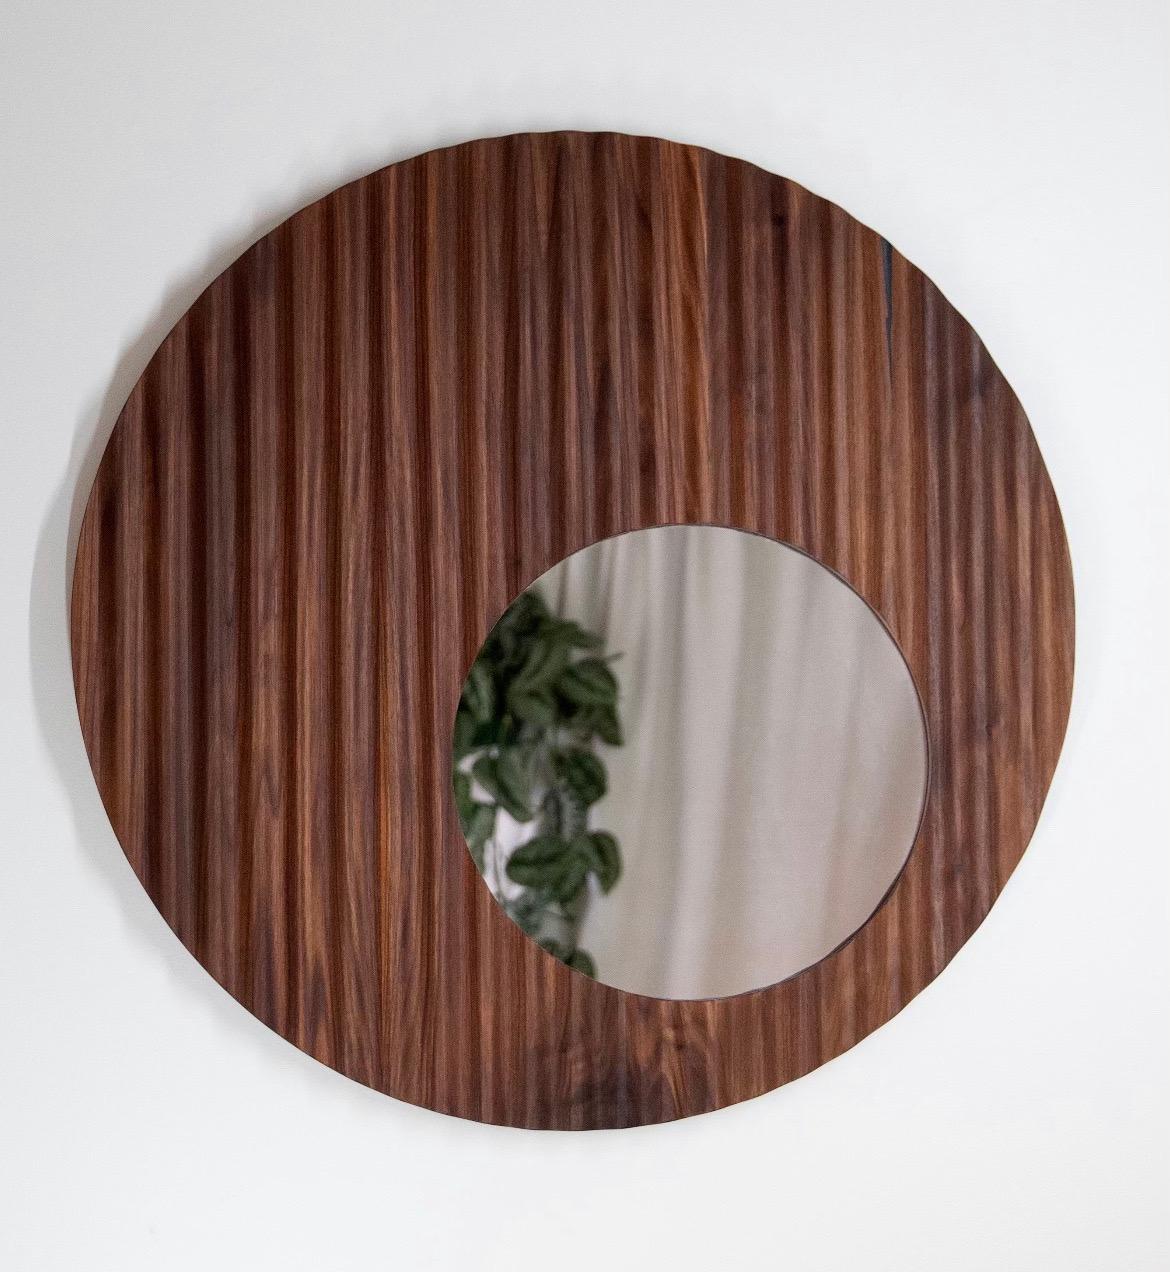 Der Ruffle-Spiegel wurde von North Carolina entworfen  Handwerker Travis Hyatt. Dieser Spiegel lässt sich nahtlos in jeden Einrichtungsstil integrieren. Es fängt Licht und Schatten wunderschön ein und hebt die natürliche Holzmaserung hervor. Mit